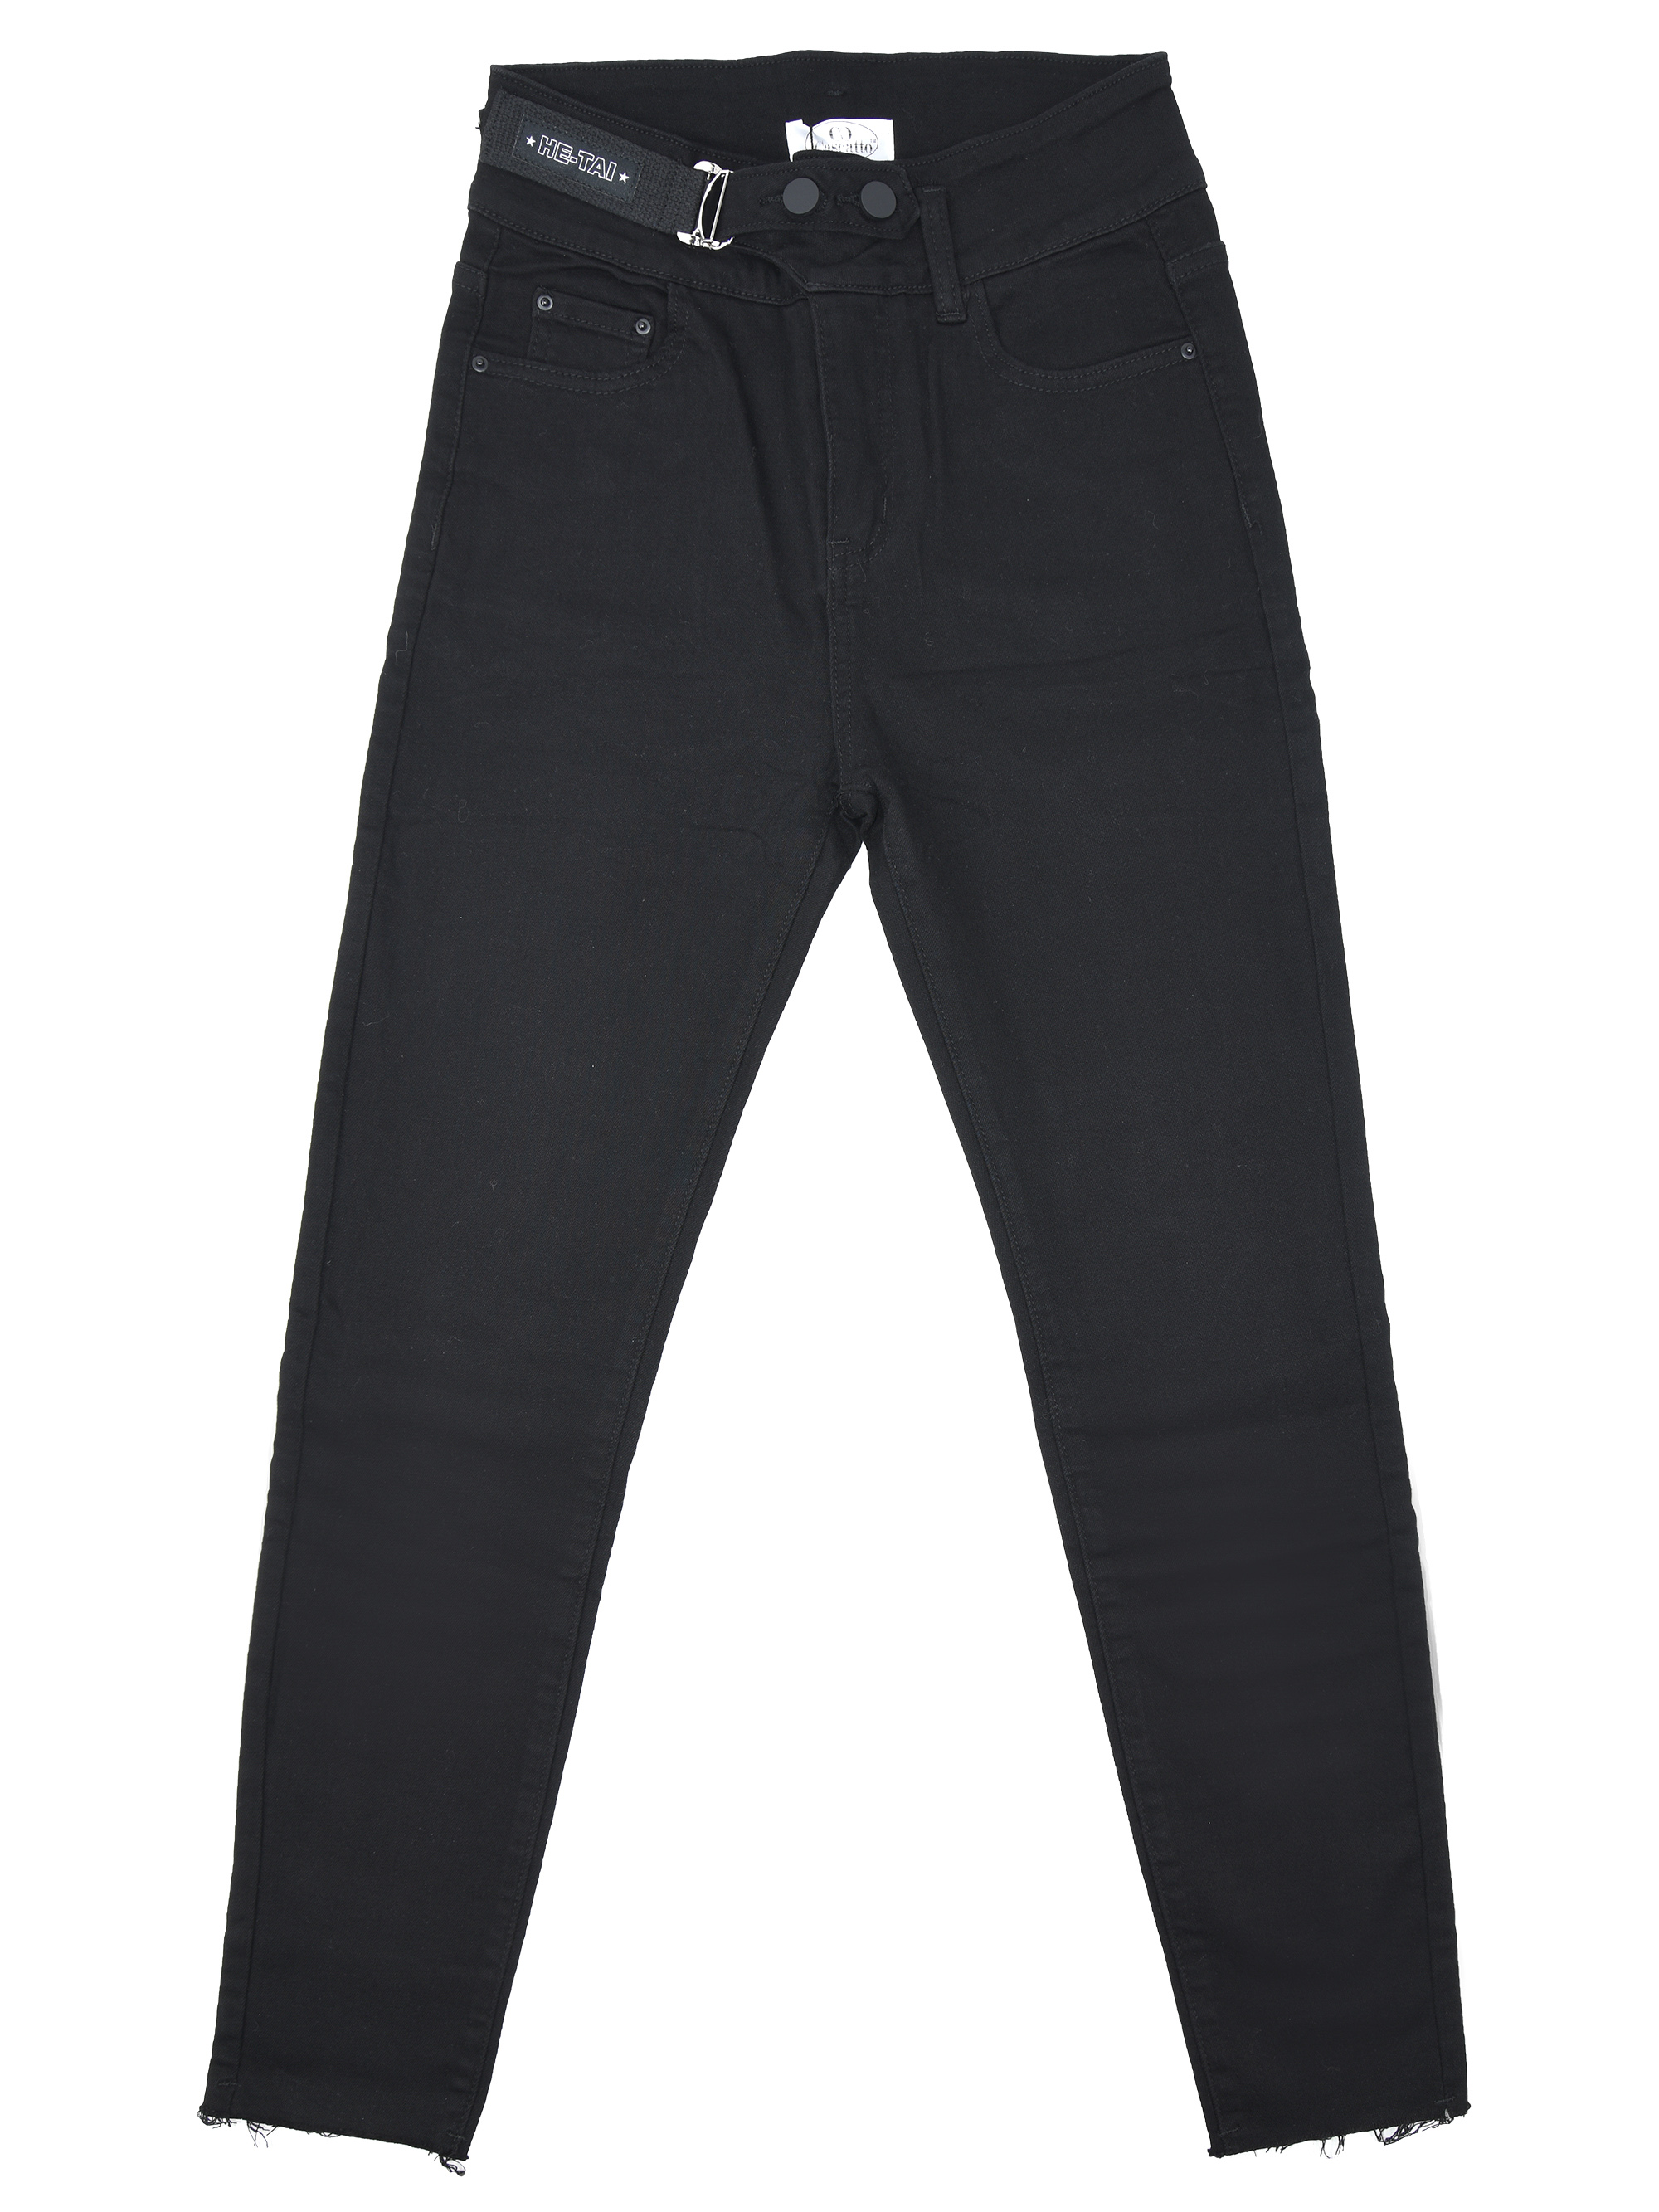 Купить Брюки женские джинсовые 22DGG18 черный